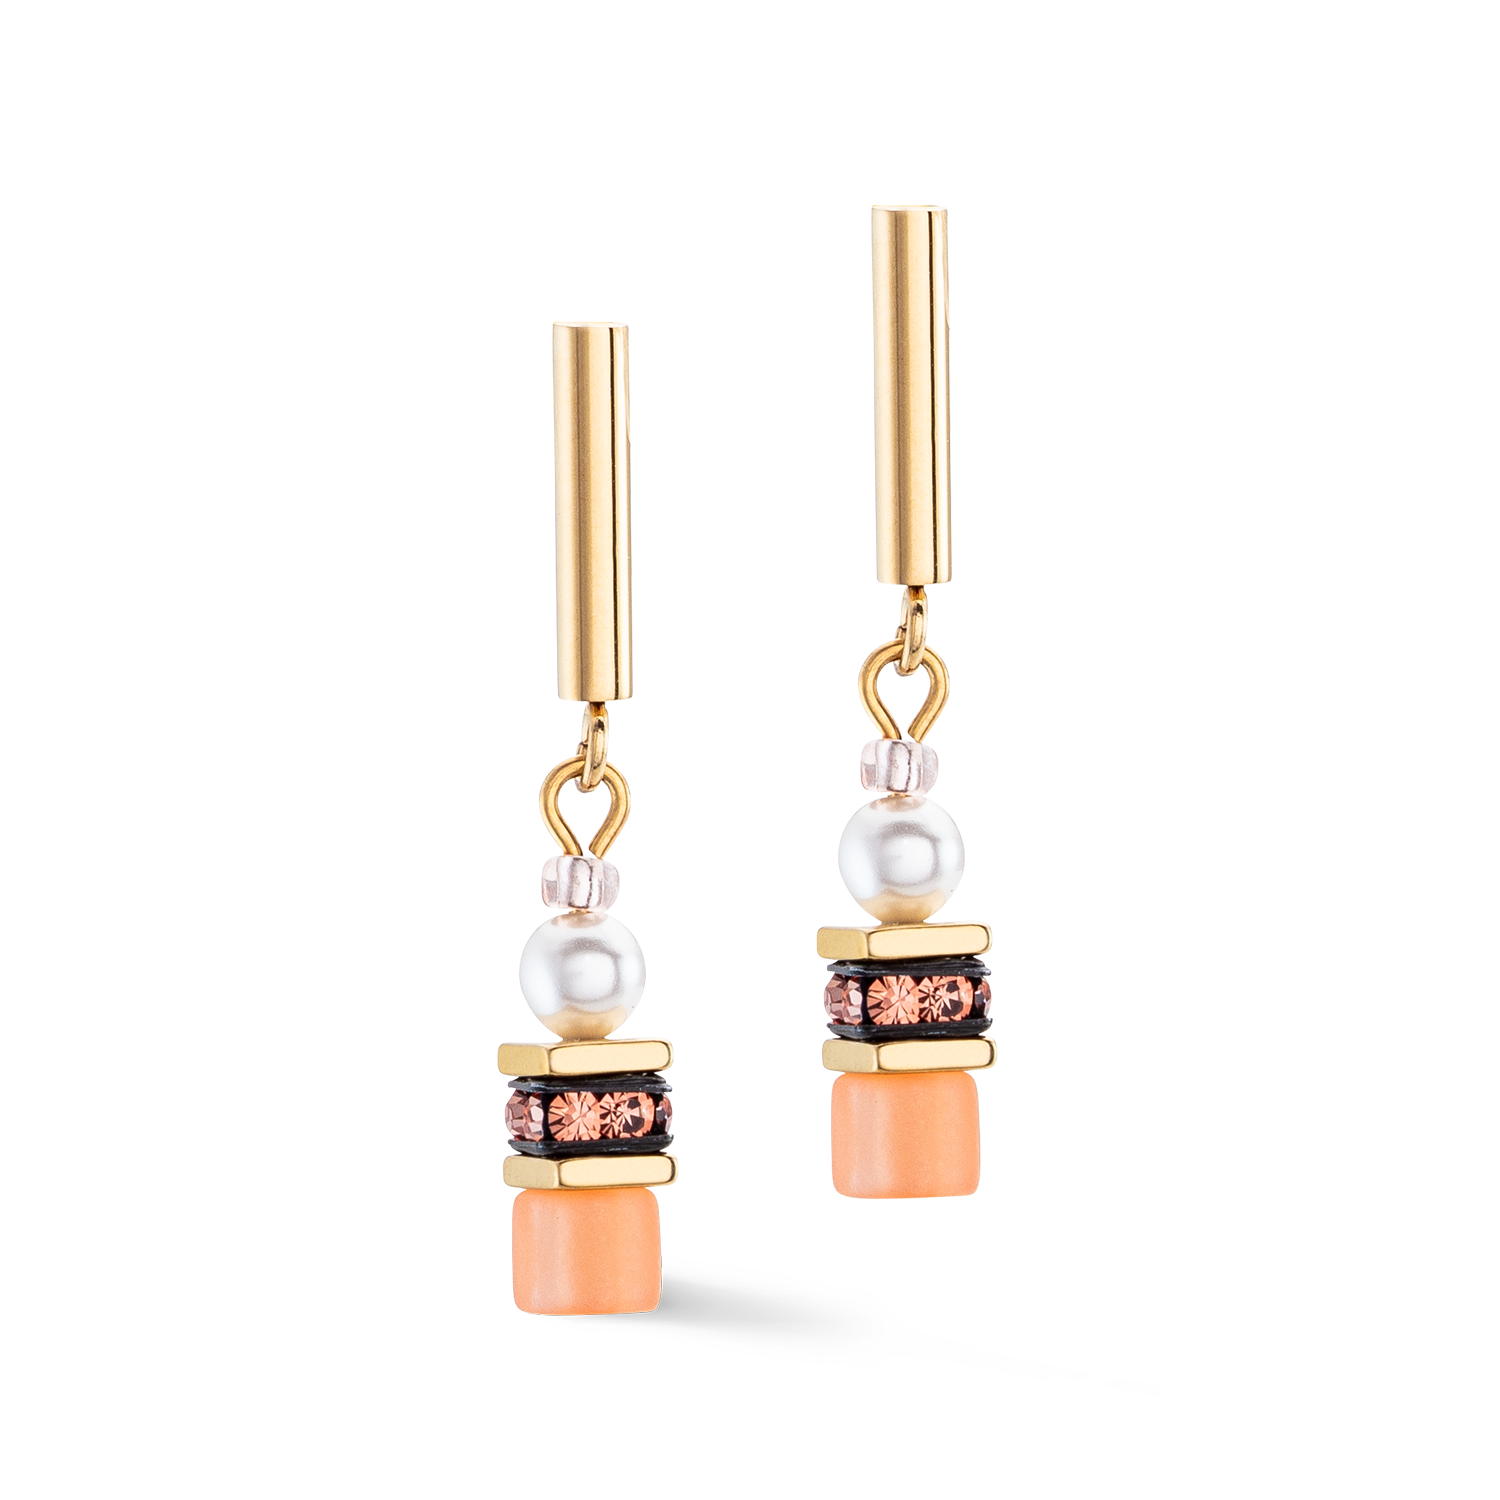 Orecchini GeoCUBE® Mini Fusion Pearls Apricot Crush